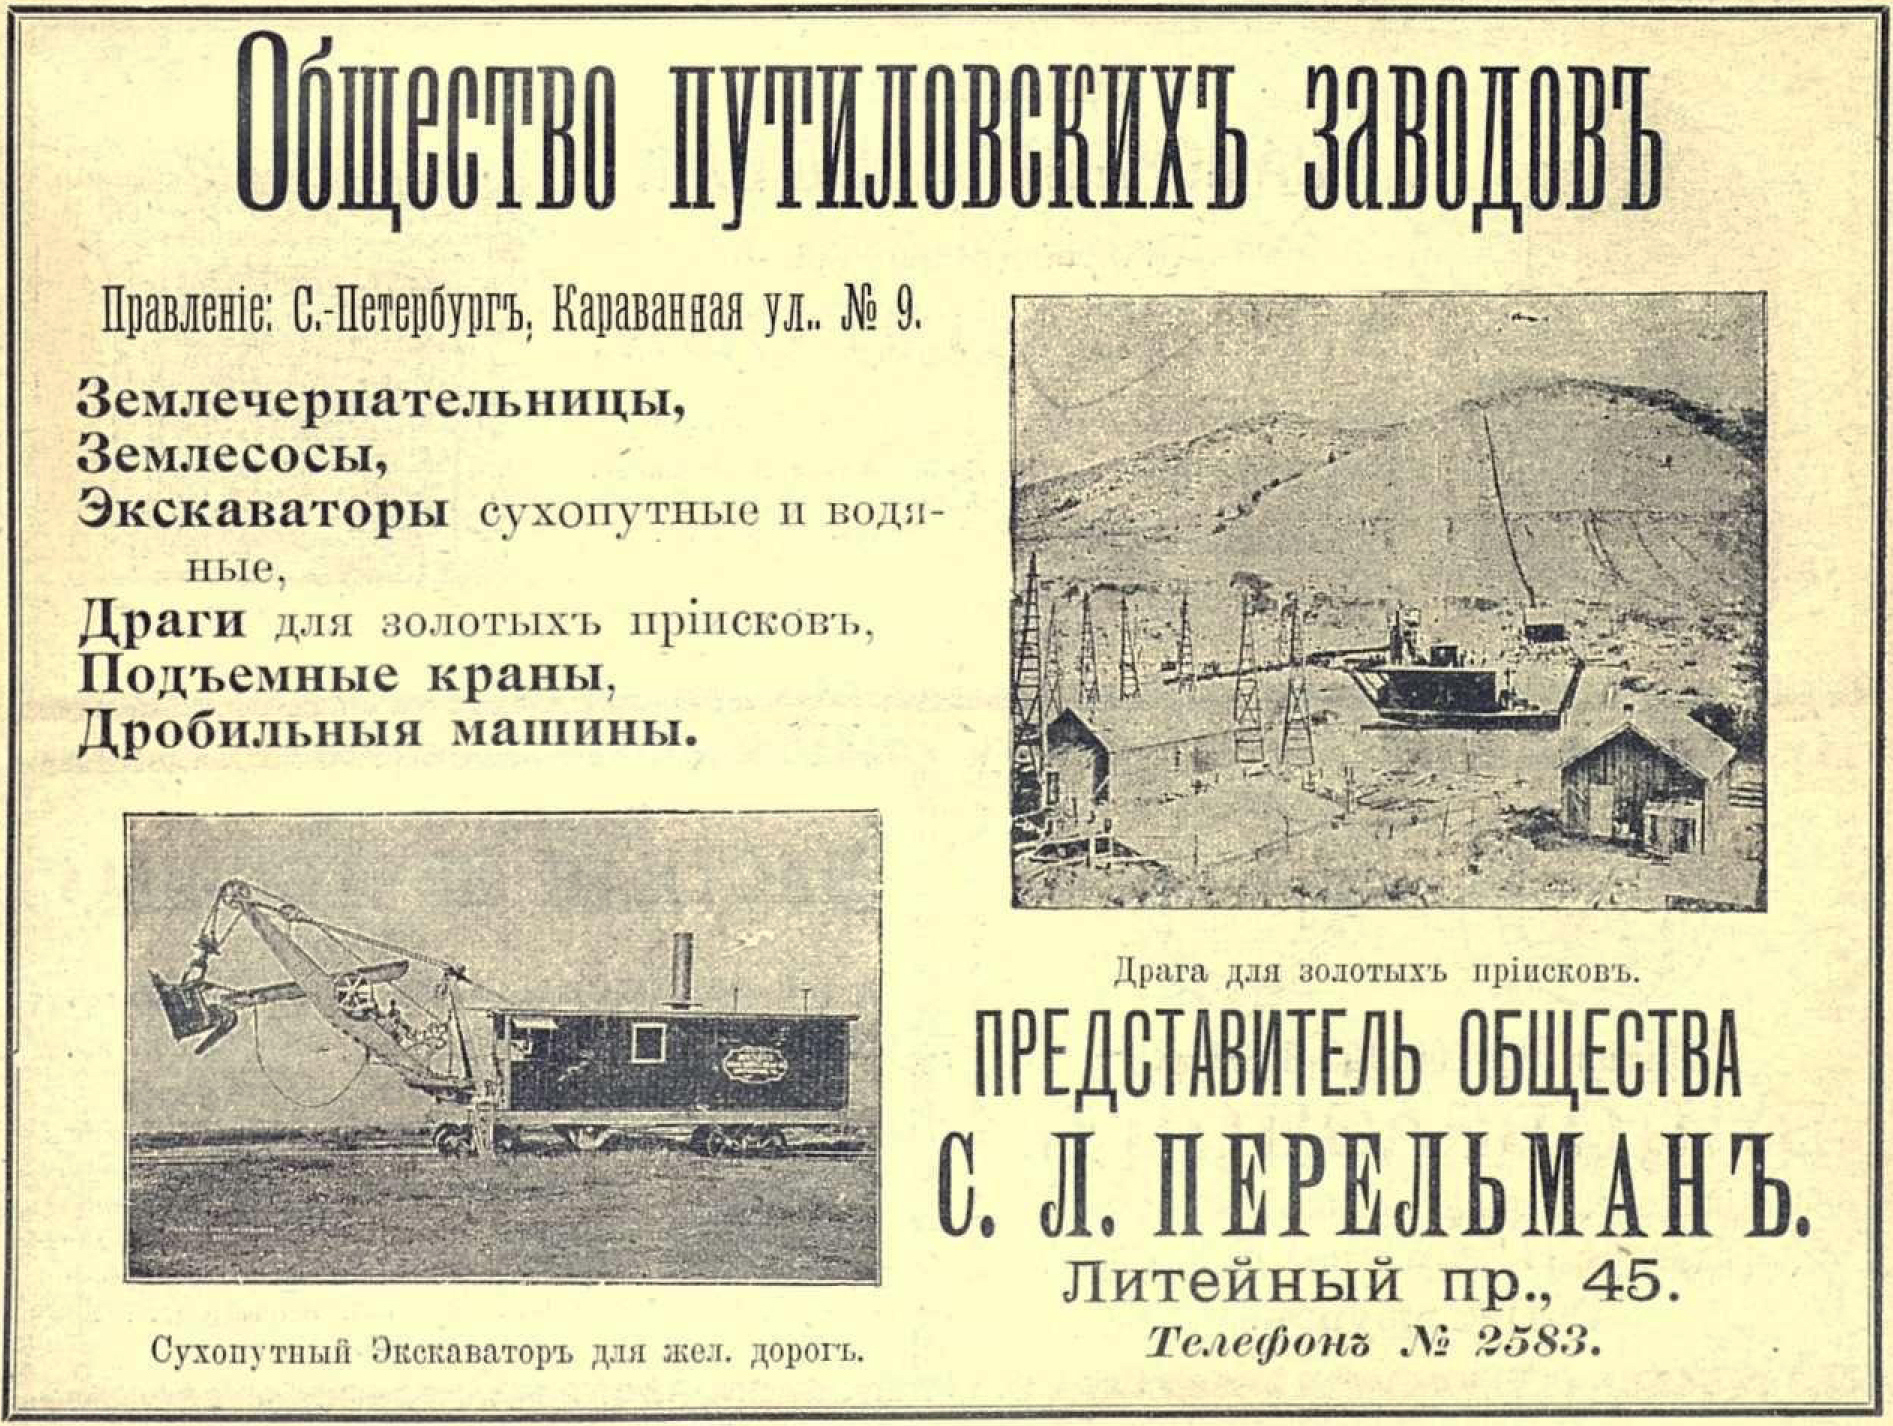 Реклама Общества Путиловских заводов, 1902 год.jpg